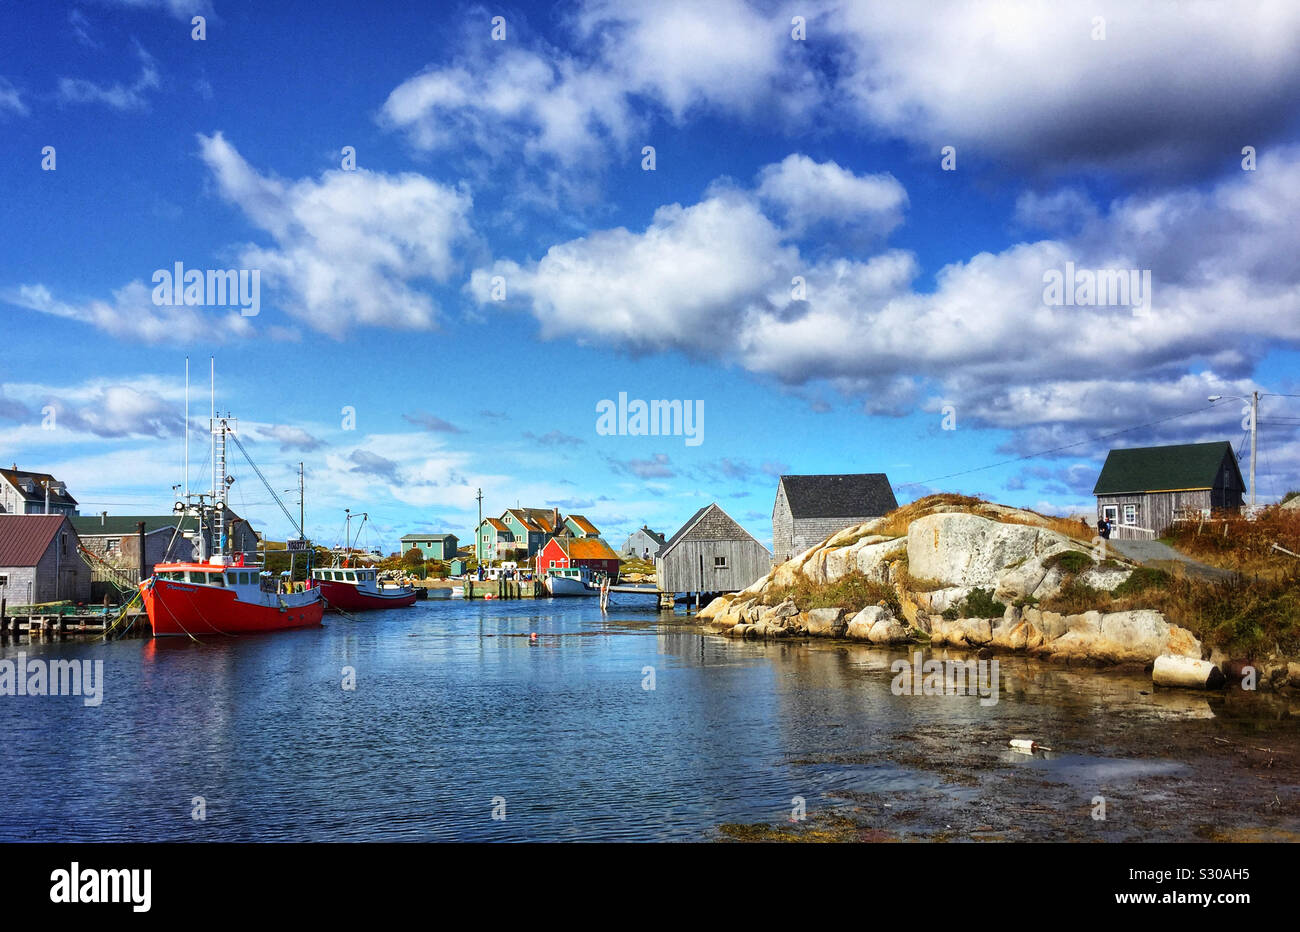 Peggy’s Cove fishing village in Nova Scotia, Canada Stock Photo